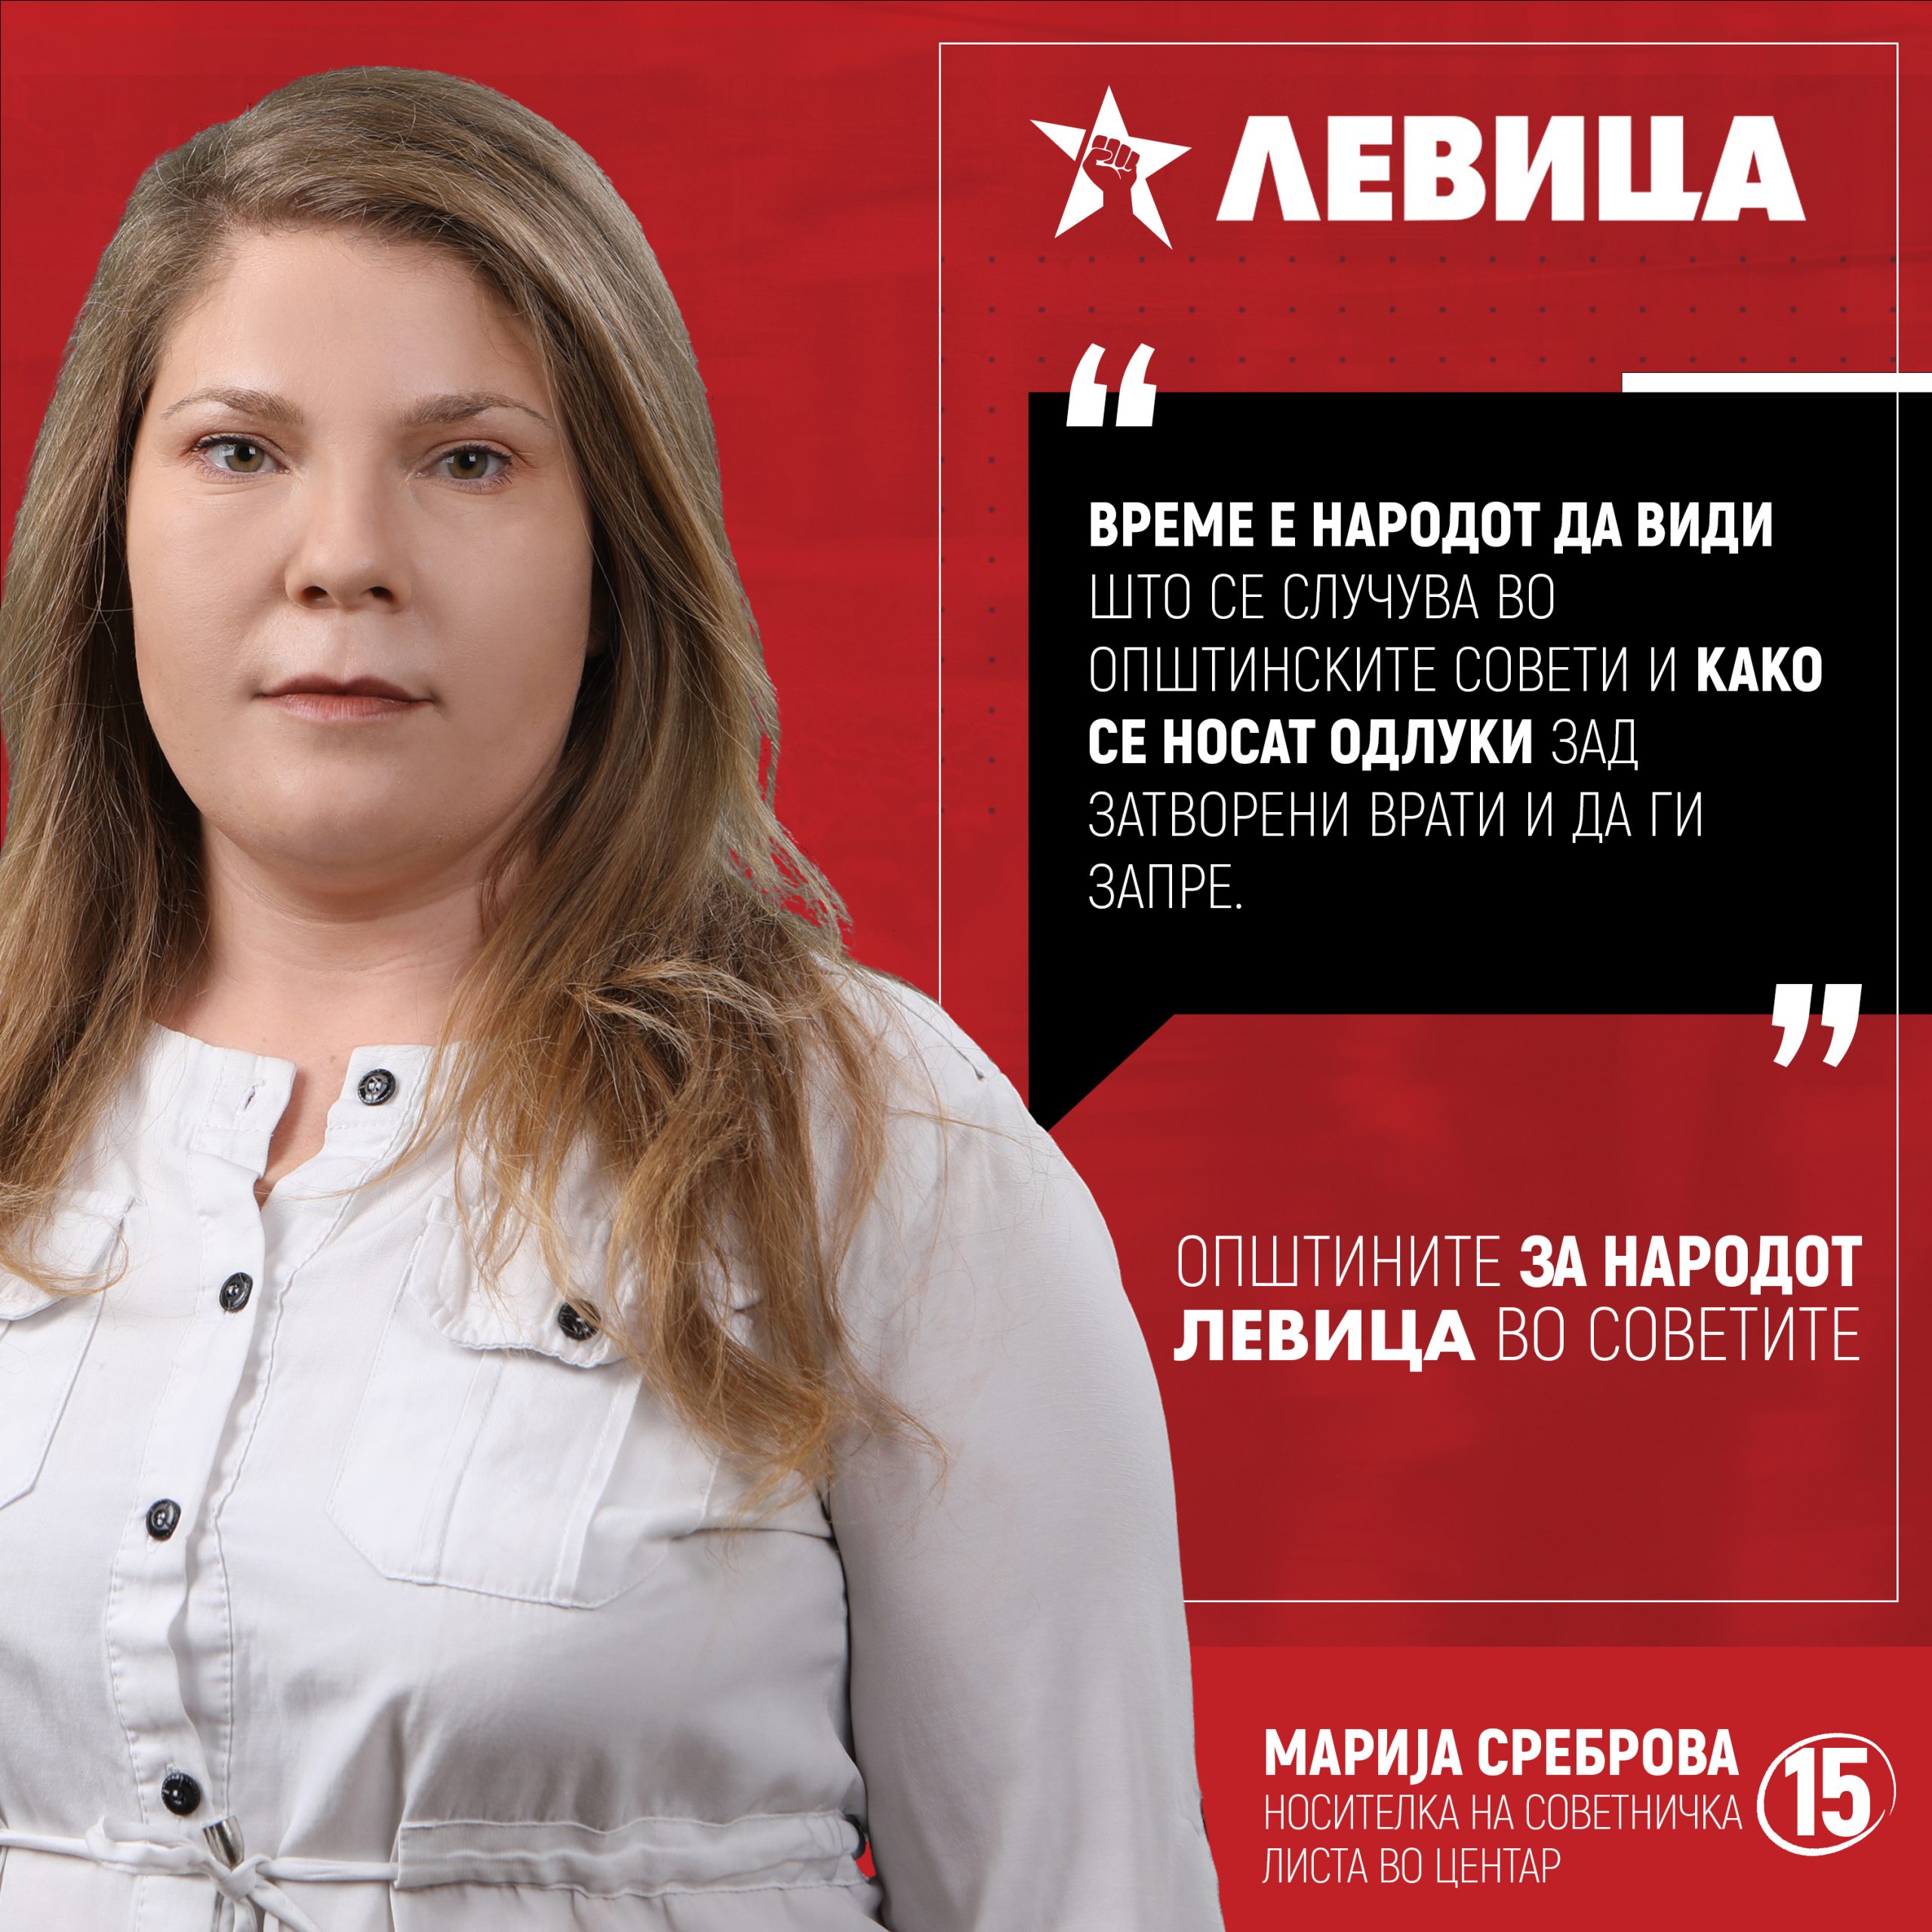 Marija Srebrova 1 scaled